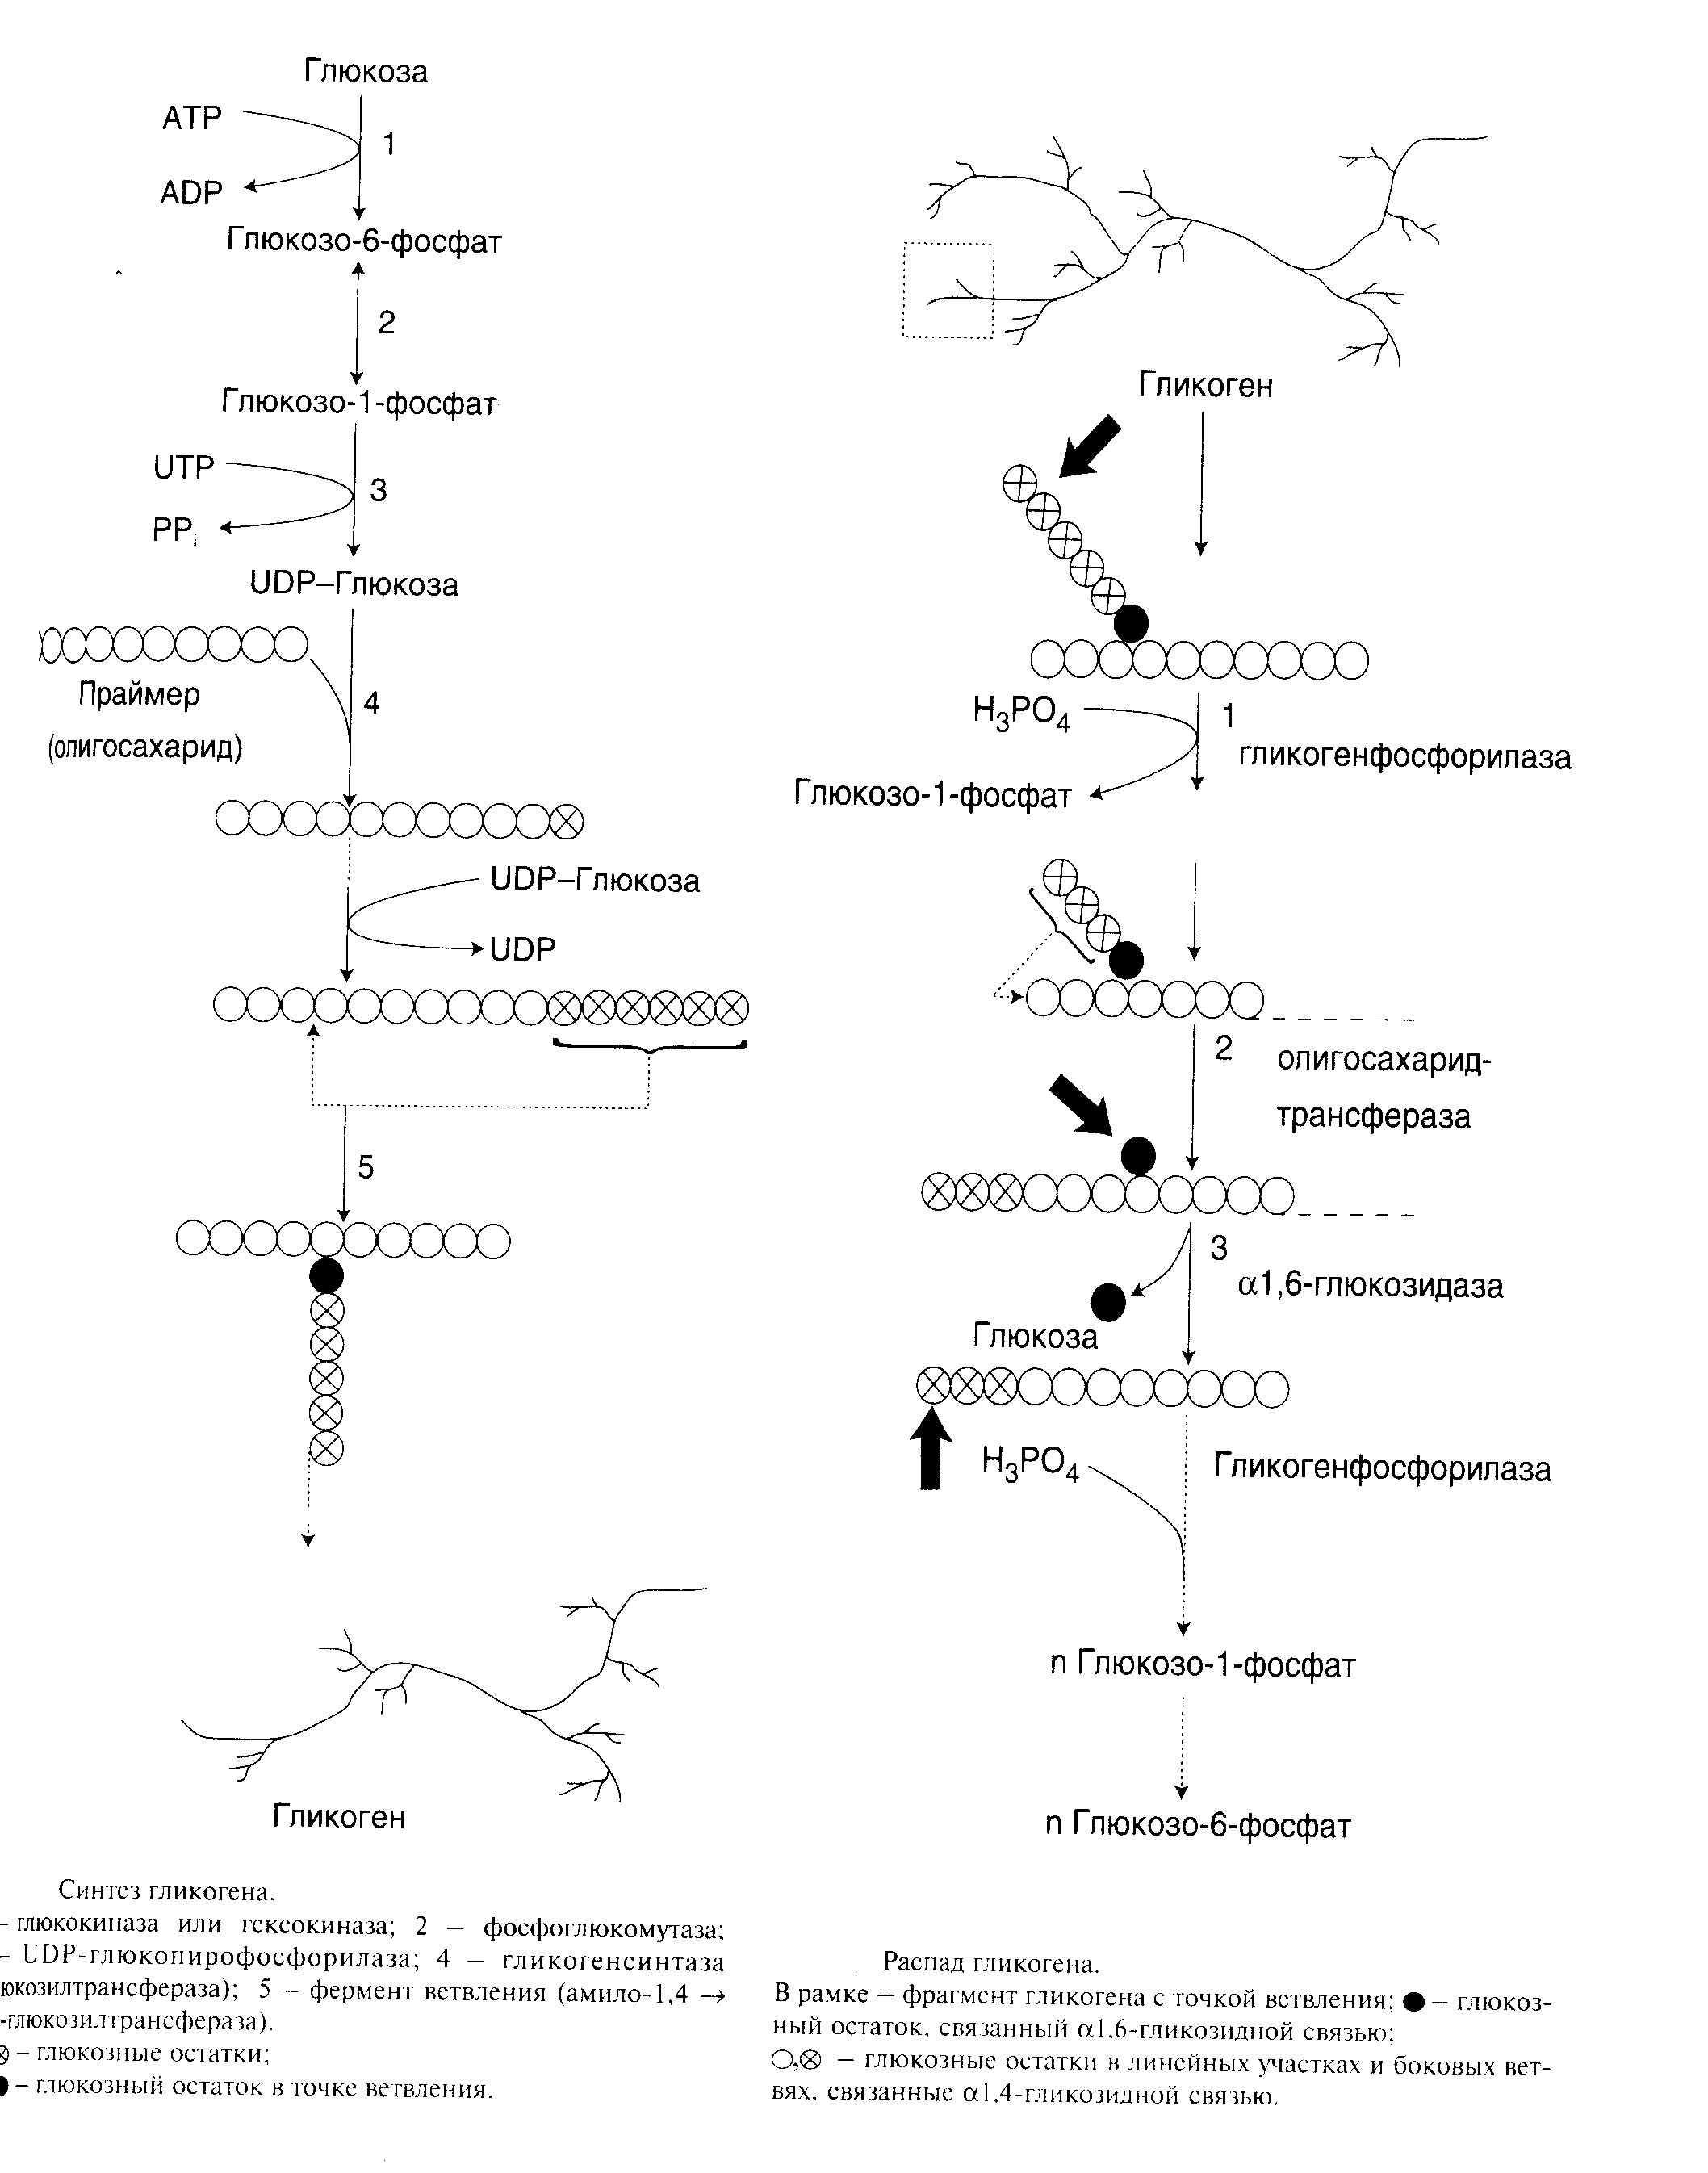 Расщепление гликогена в печени. Синтез и распад гликогена. Синтез гликогена из глюкозо-1-фосфата. Схема синтеза и распада гликогена. Биосинтез гликогена в печени.